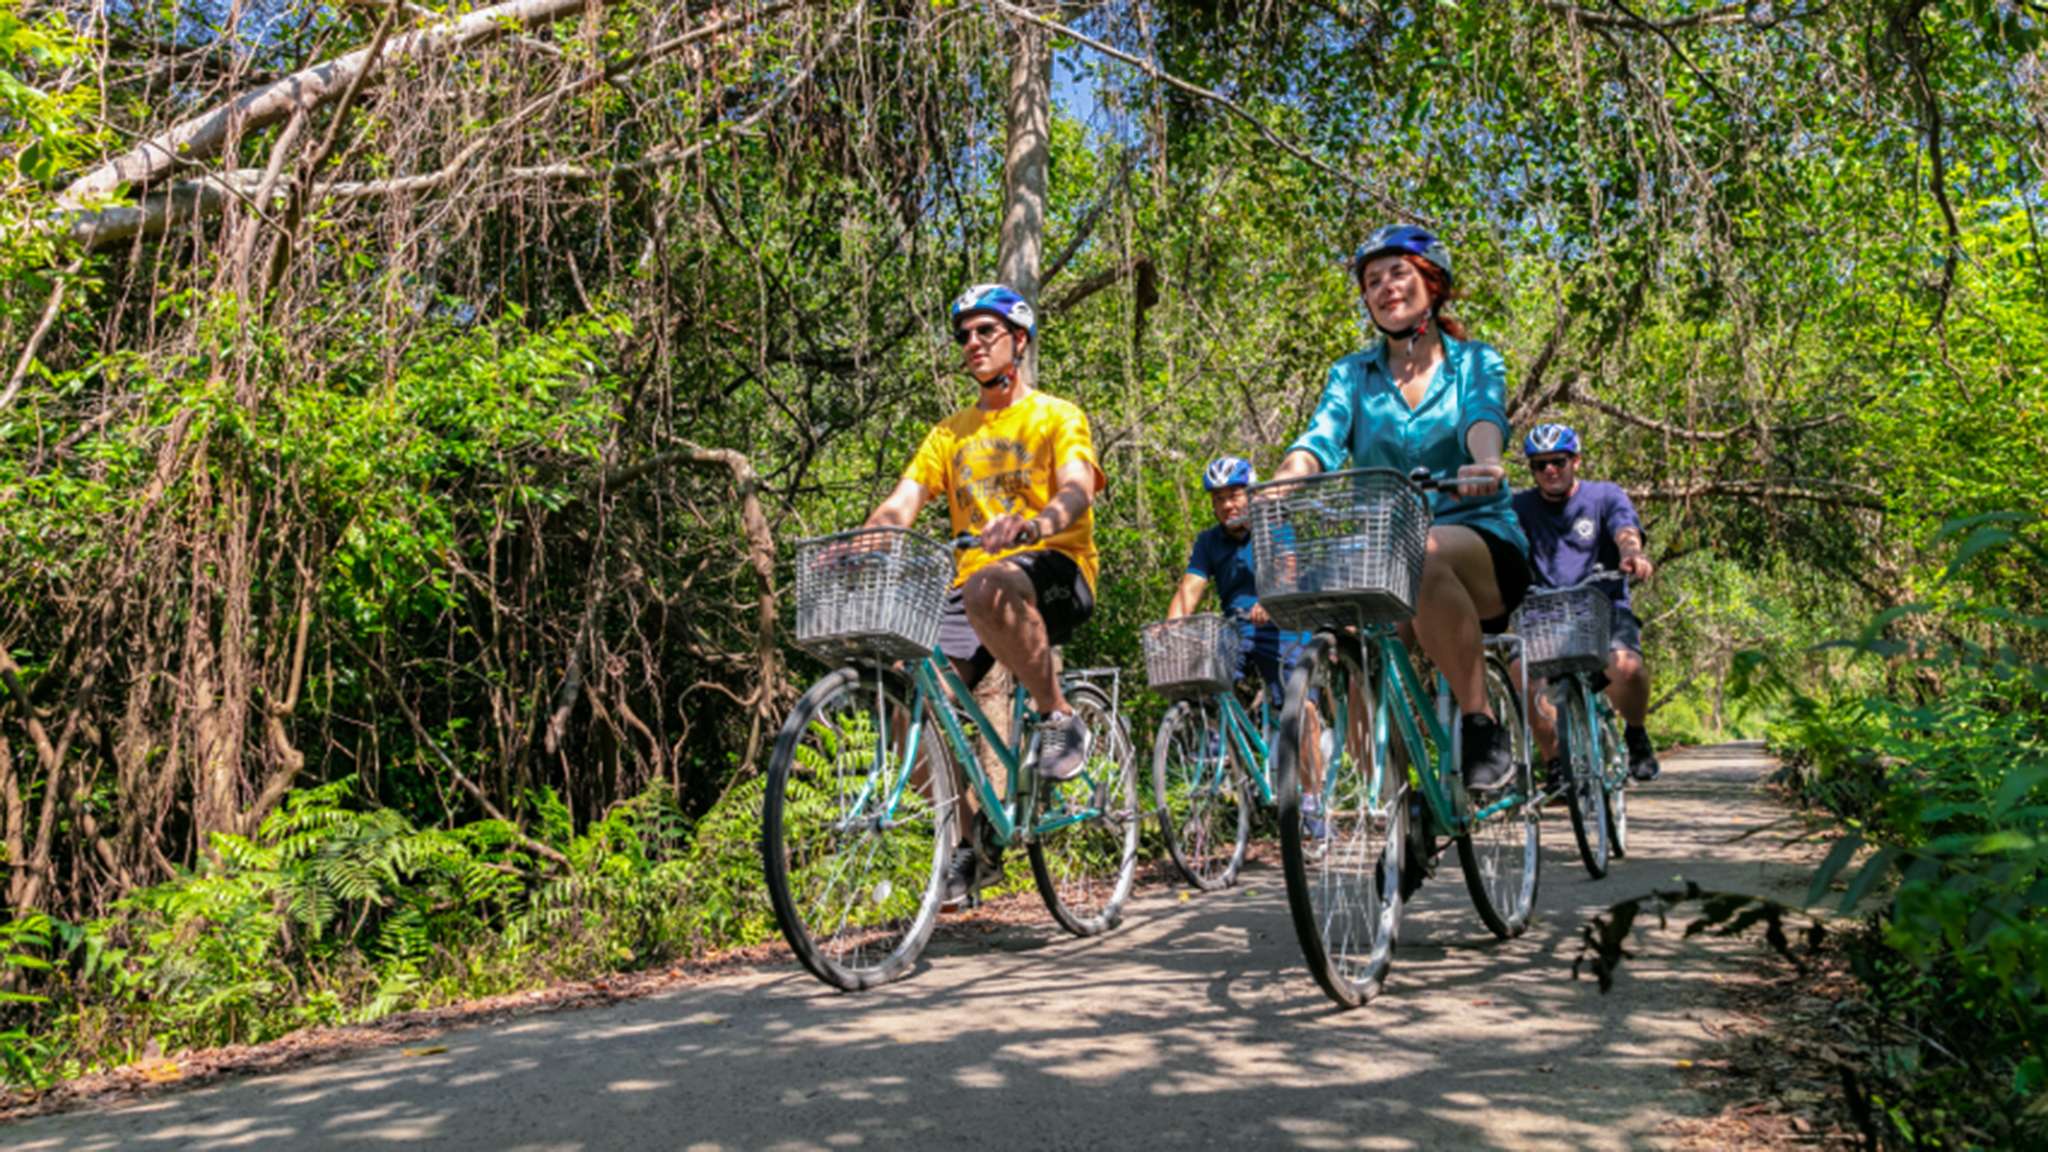 Experience biking in Viet Hai Village